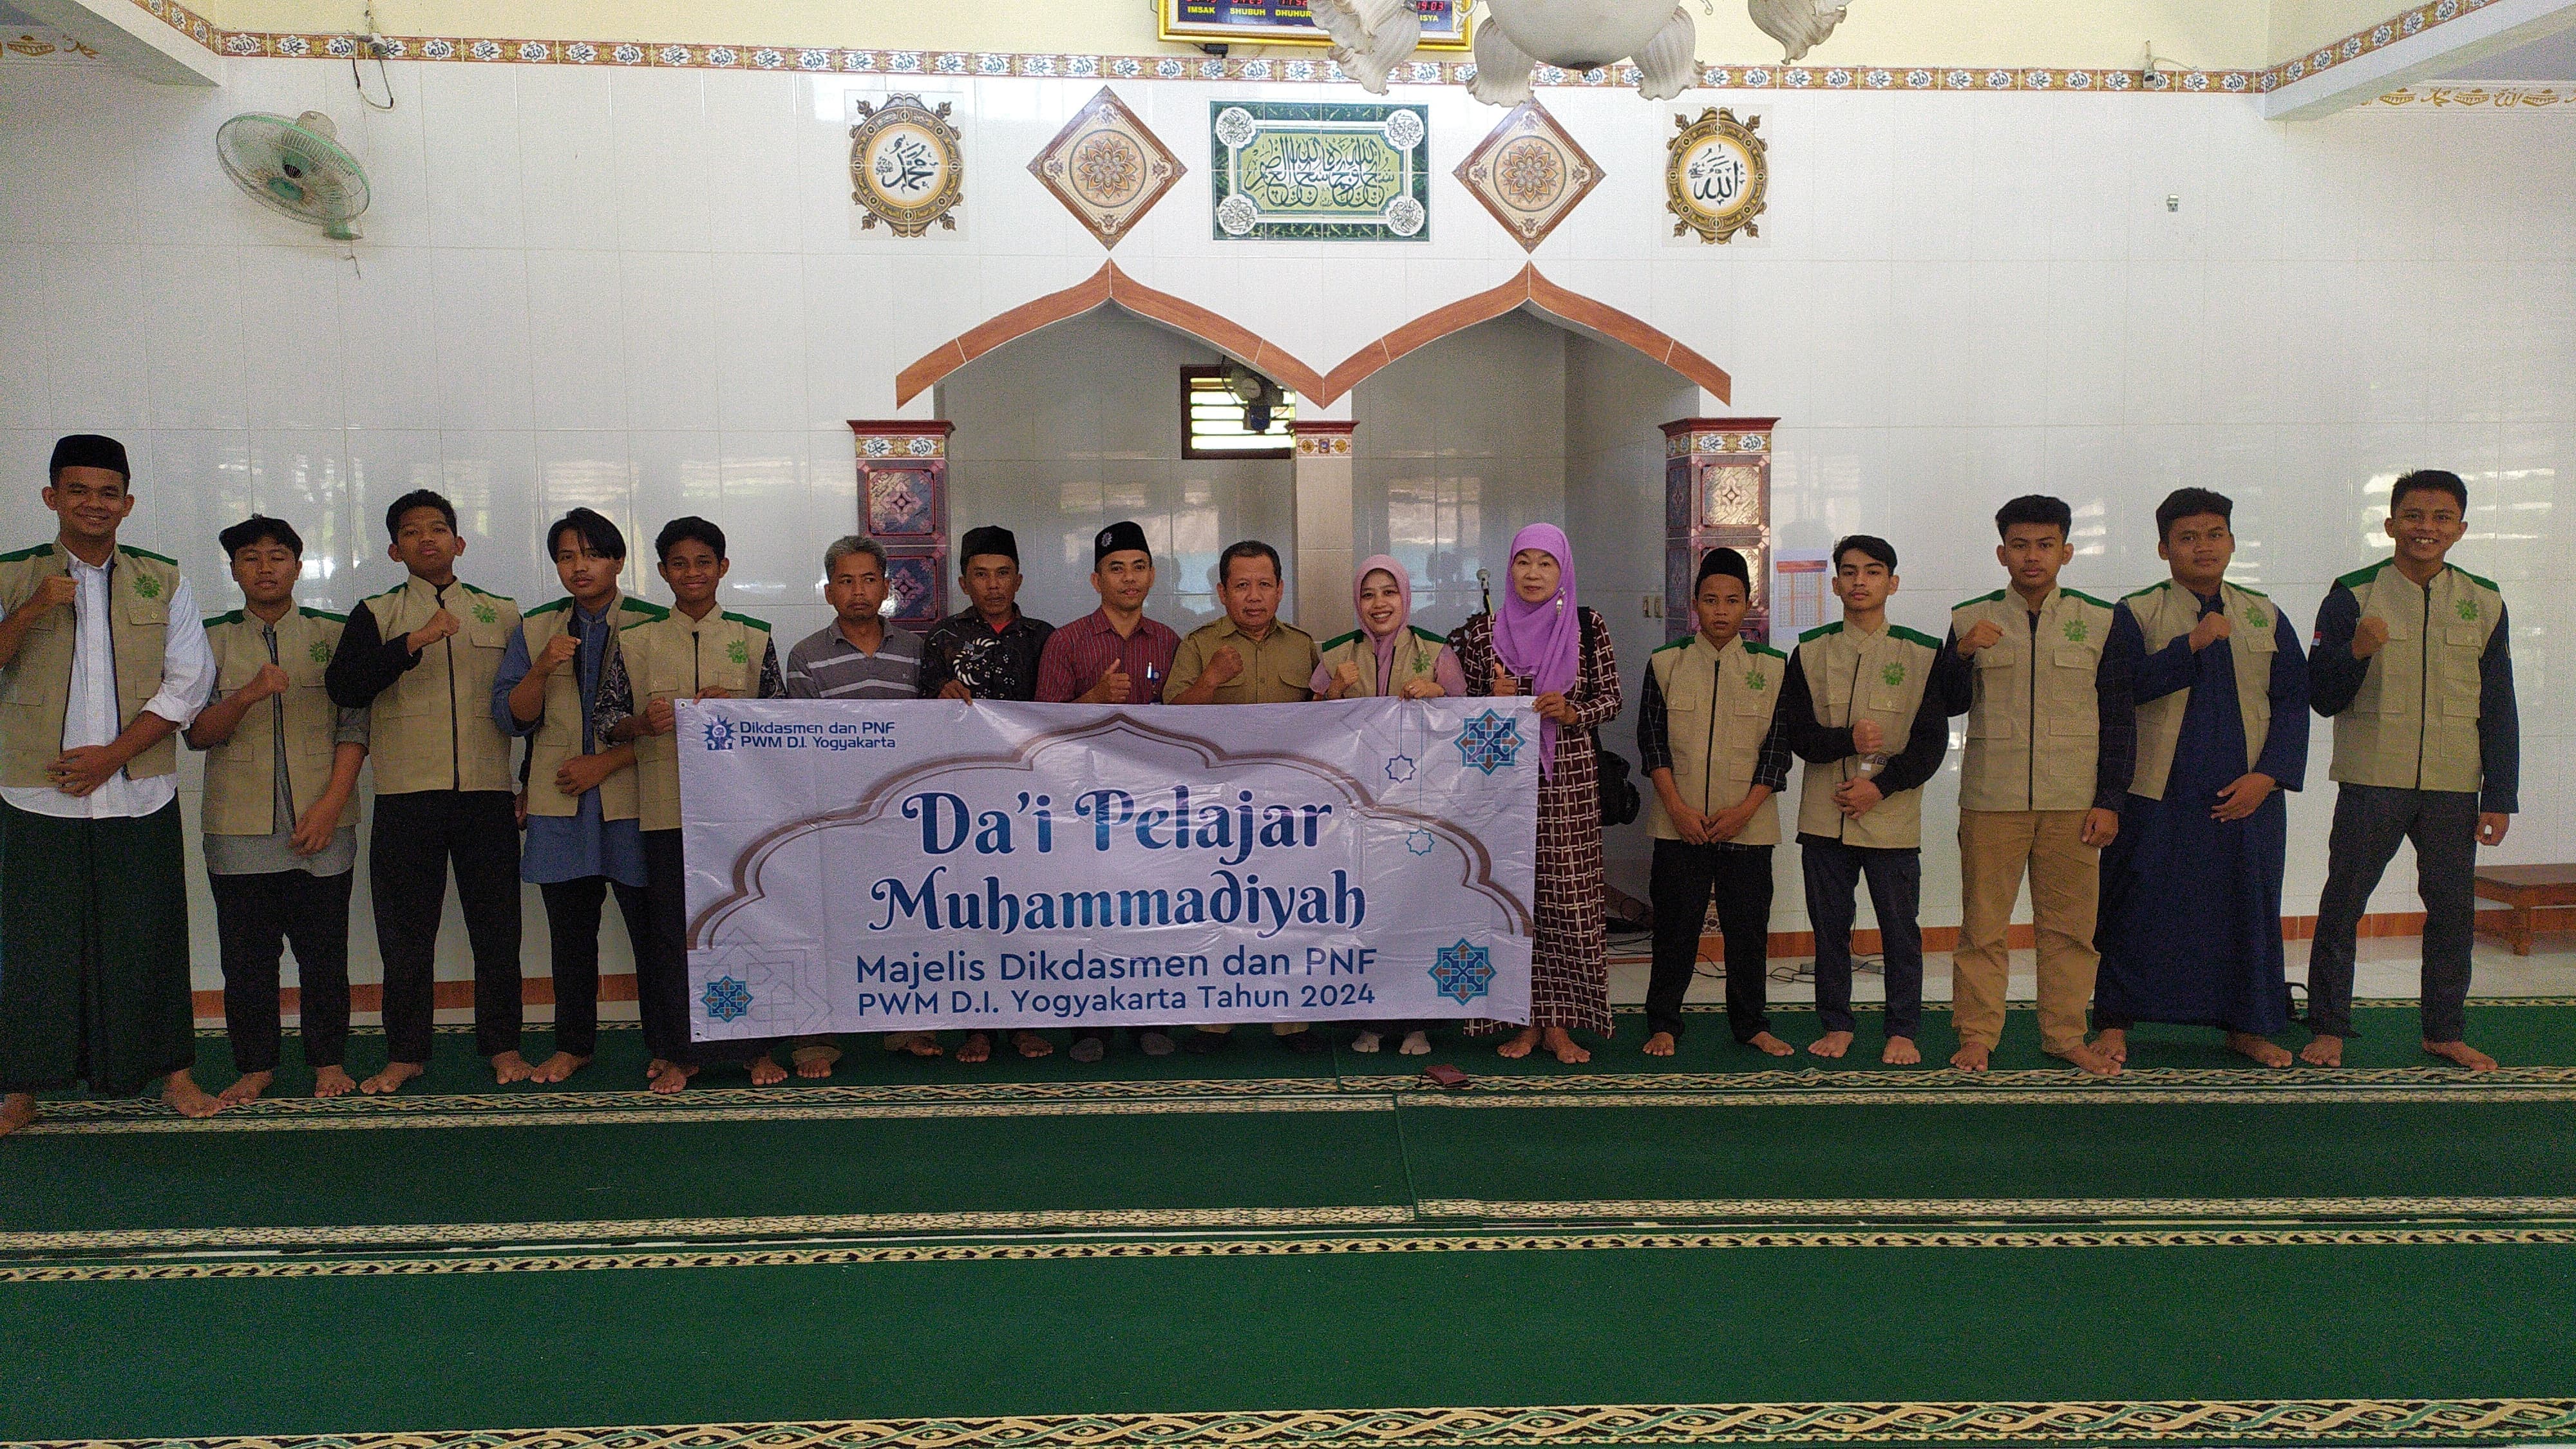 Dai Pelajar Muhammadiyah